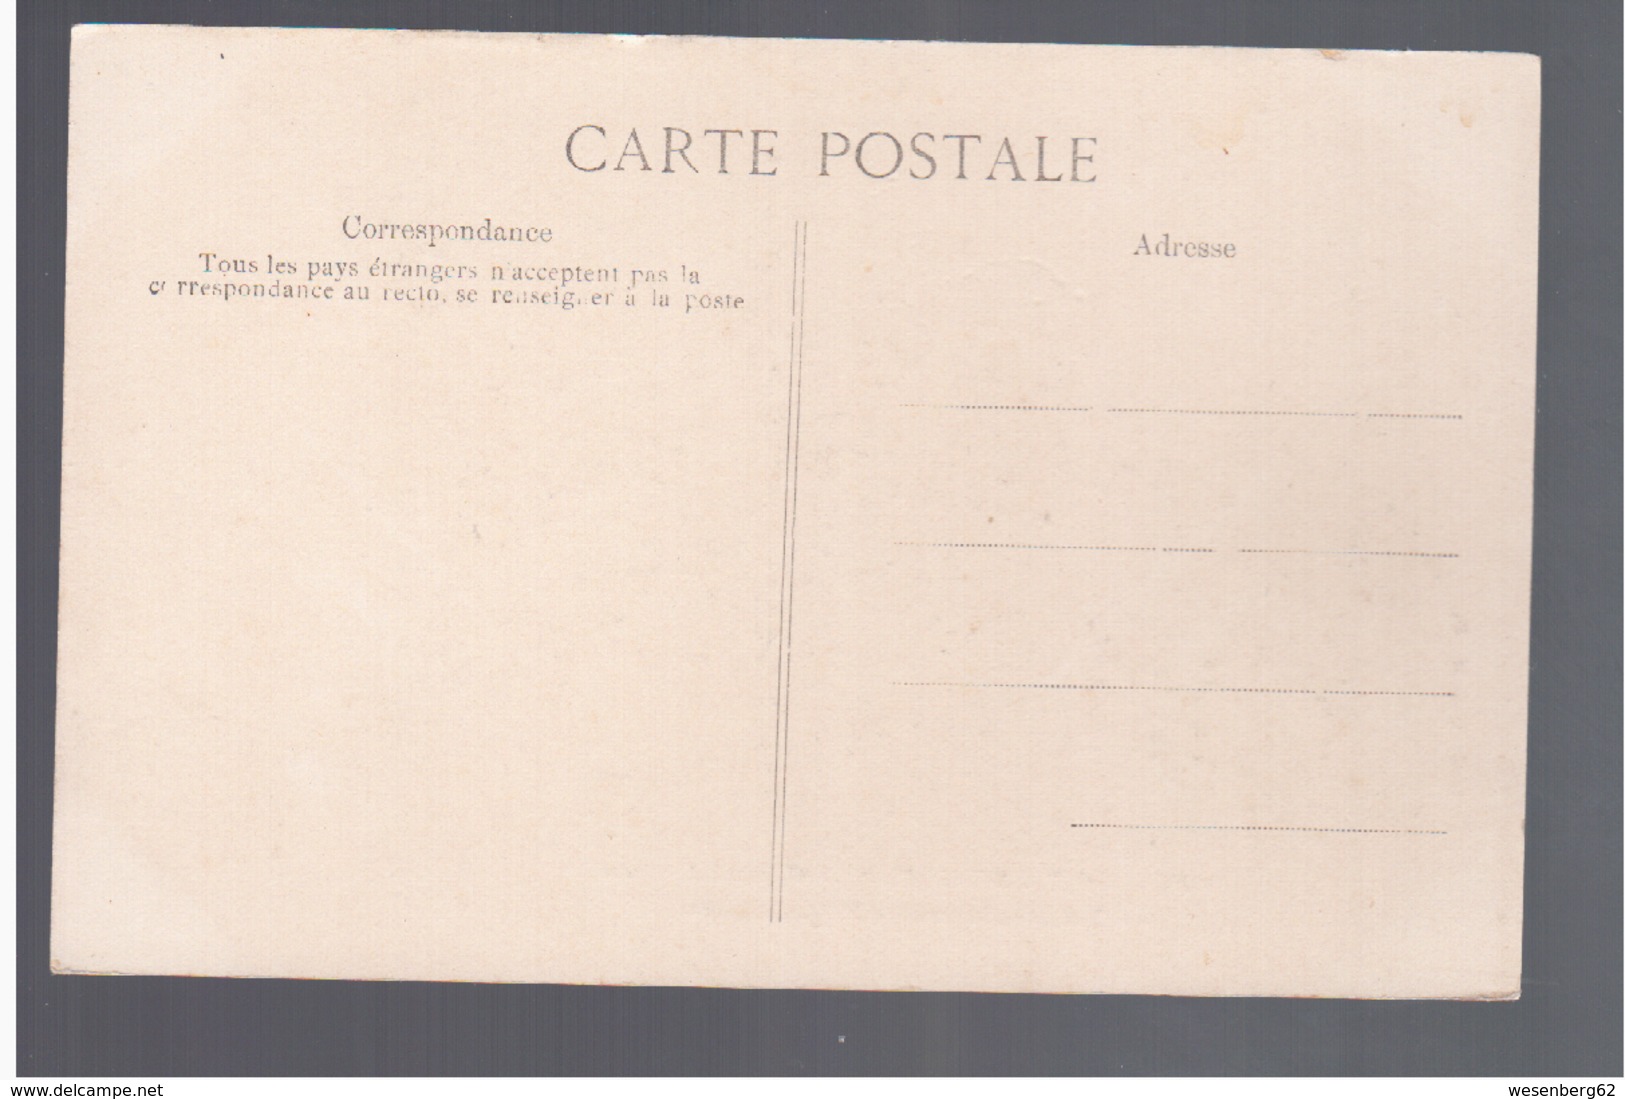 Cote D'Ivoire Grand Lahou La Résidence - Façade Est Ca 1910 OLD POSTCARD - Côte-d'Ivoire